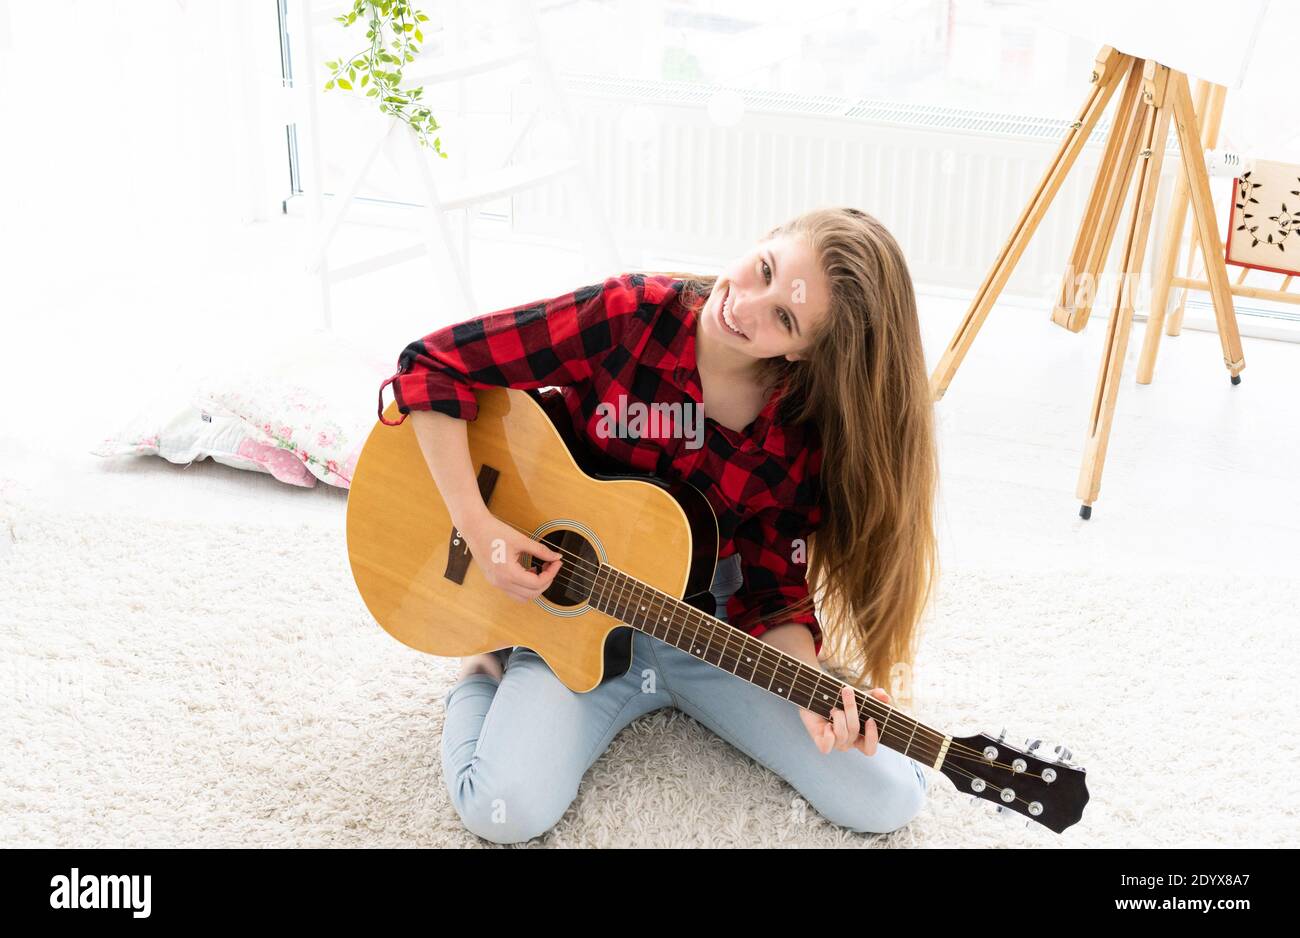 Chica linda con pelo largo y suelto tocando la guitarra en la luz habitación Foto de stock